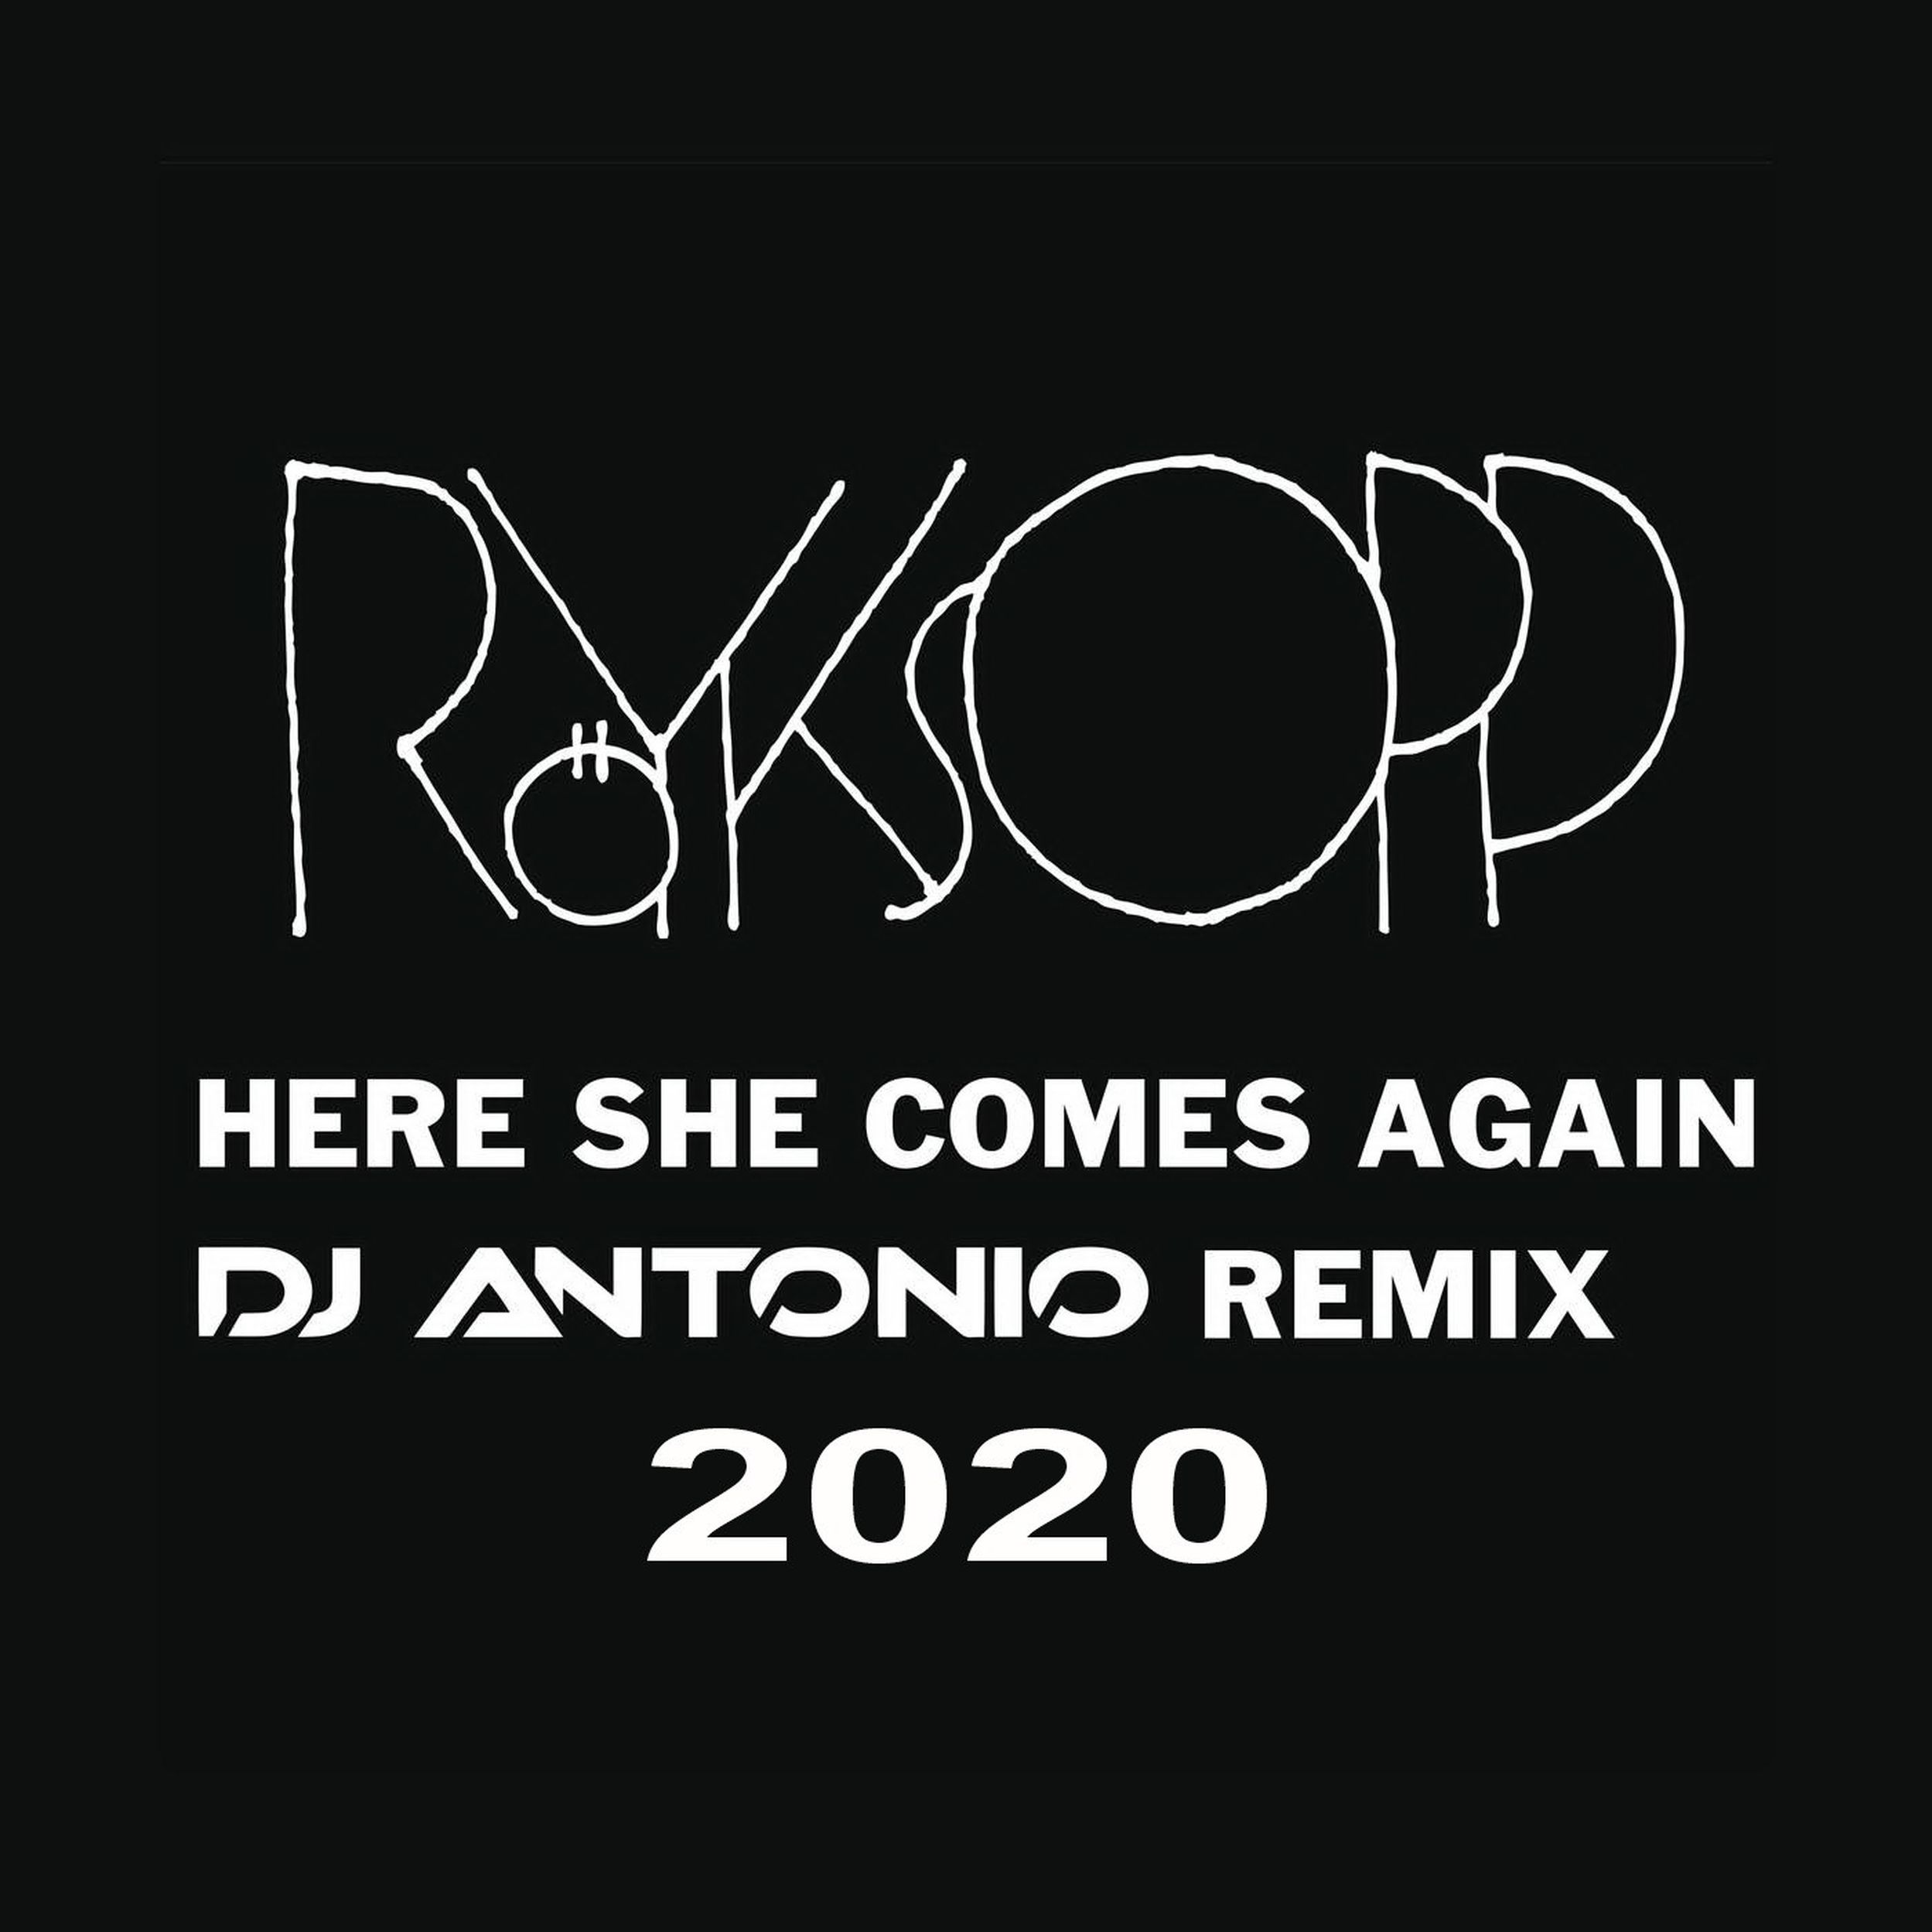 Here she again слушать. Here she comes again. Here she comes again (DJ Antonio Remix). Royksopp here she comes again. Royksopp here comes again.